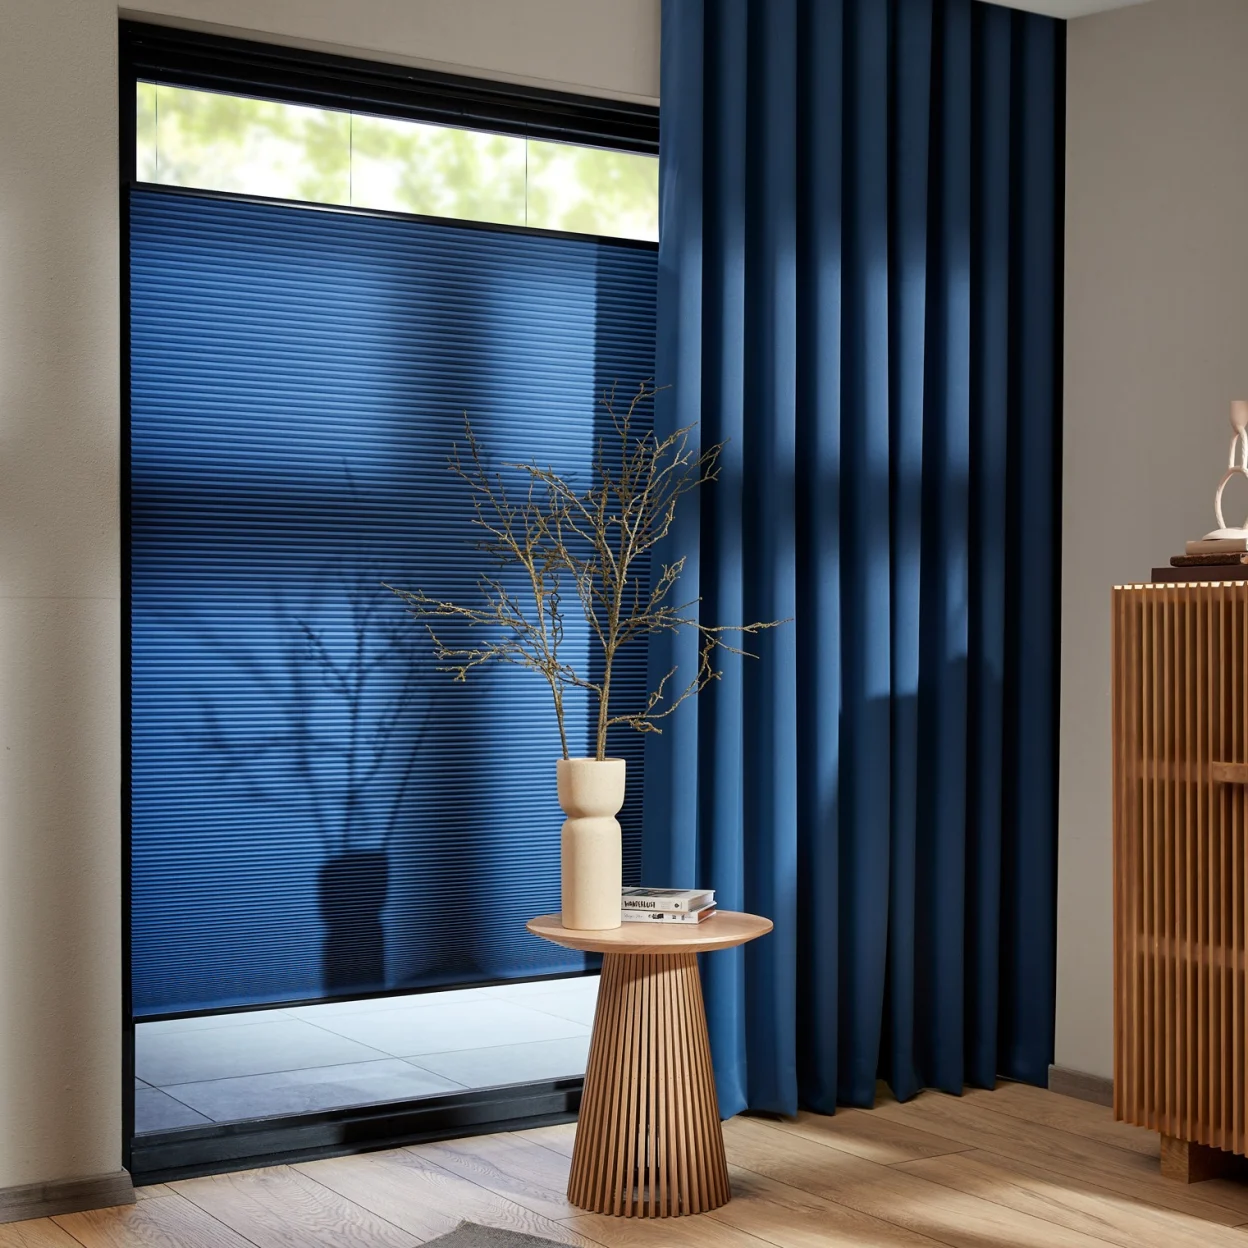 Banner Draaikiep plisségordijnen - Alles voor raamdecoratie - Keuzehulp voor je raambekleding - NL